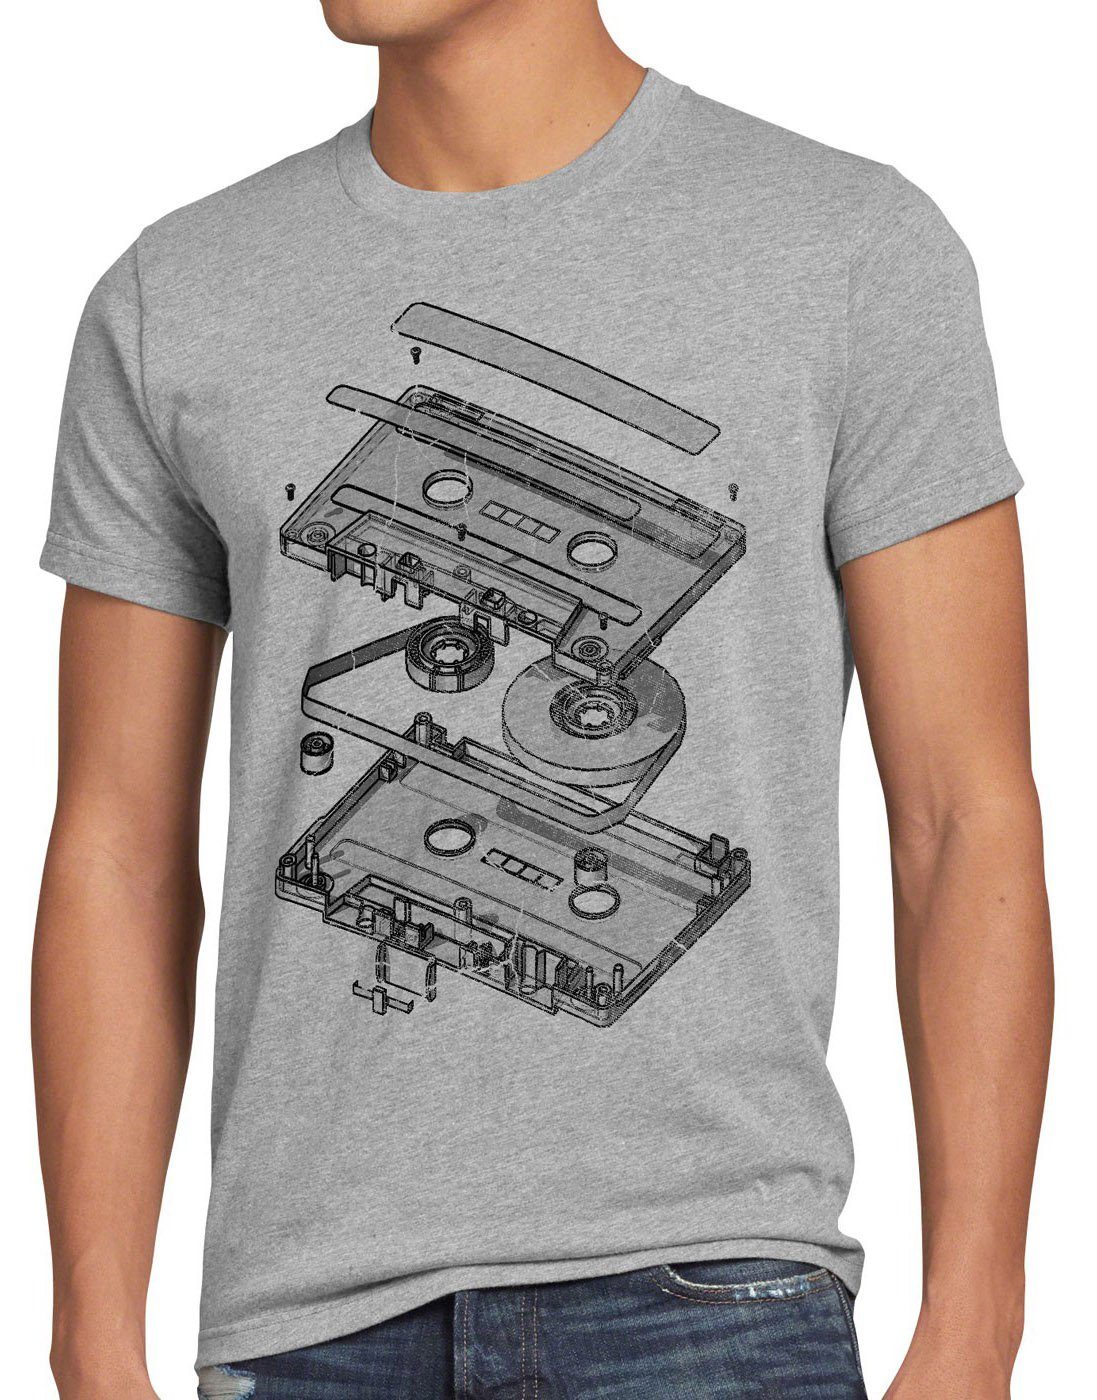 style3 Print-Shirt Herren T-Shirt Tape Kassette mc dj 3D turntable ndw analog disko cd 80er vinyl grau meliert